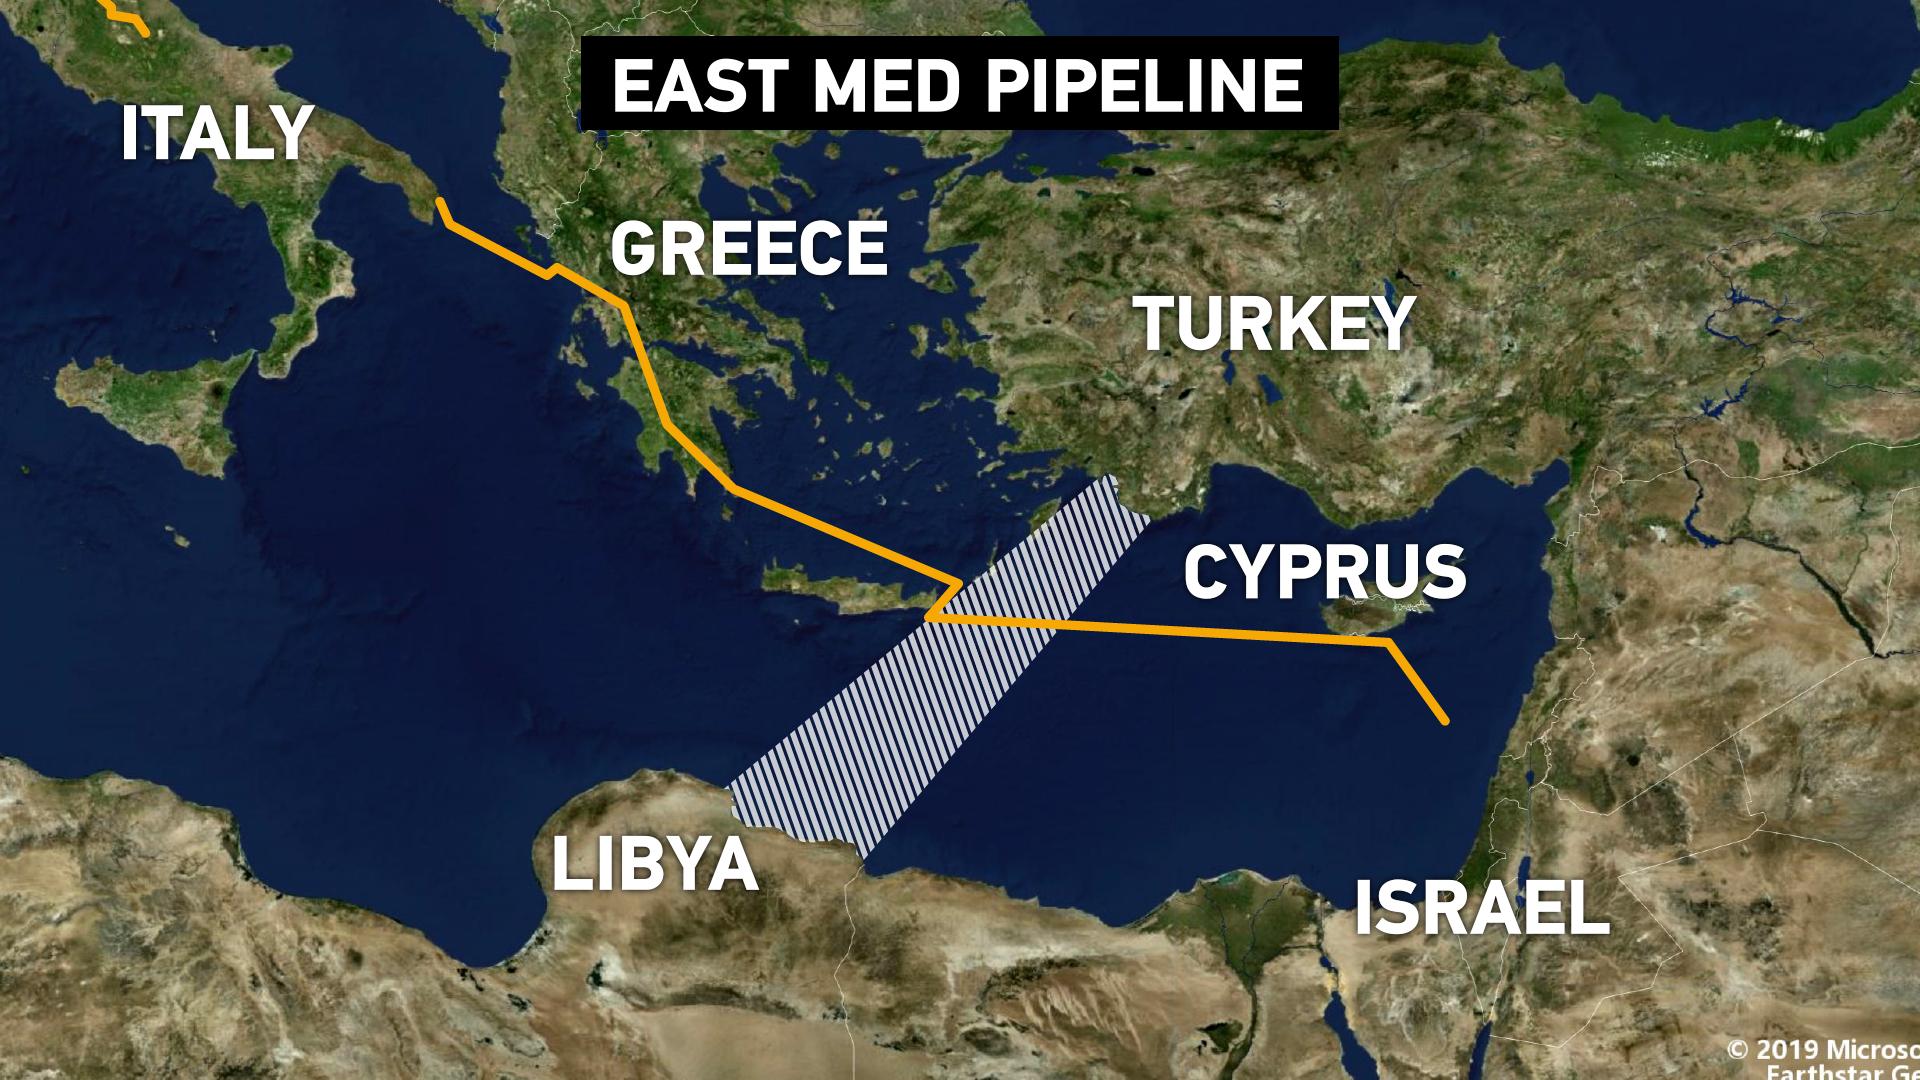 East-Med Pipeline